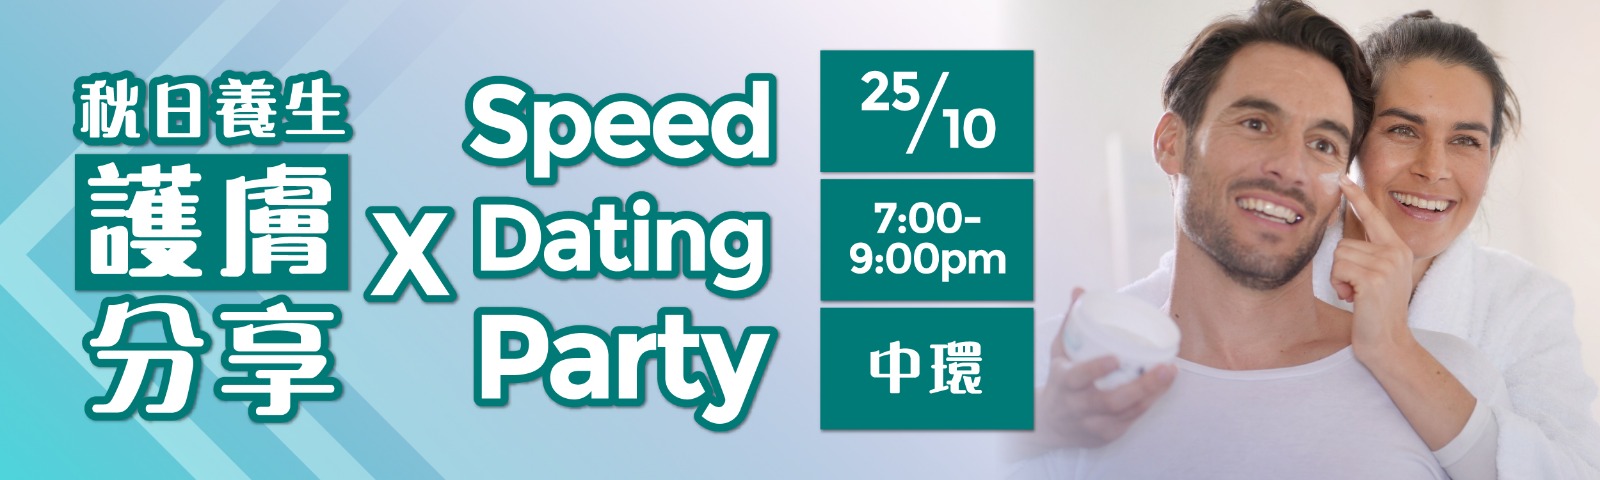 最新Speed Dating約會消息: 秋日養生護膚分享 & Speed Dating Party ‧ 剩餘名額 (男):12 (女):12